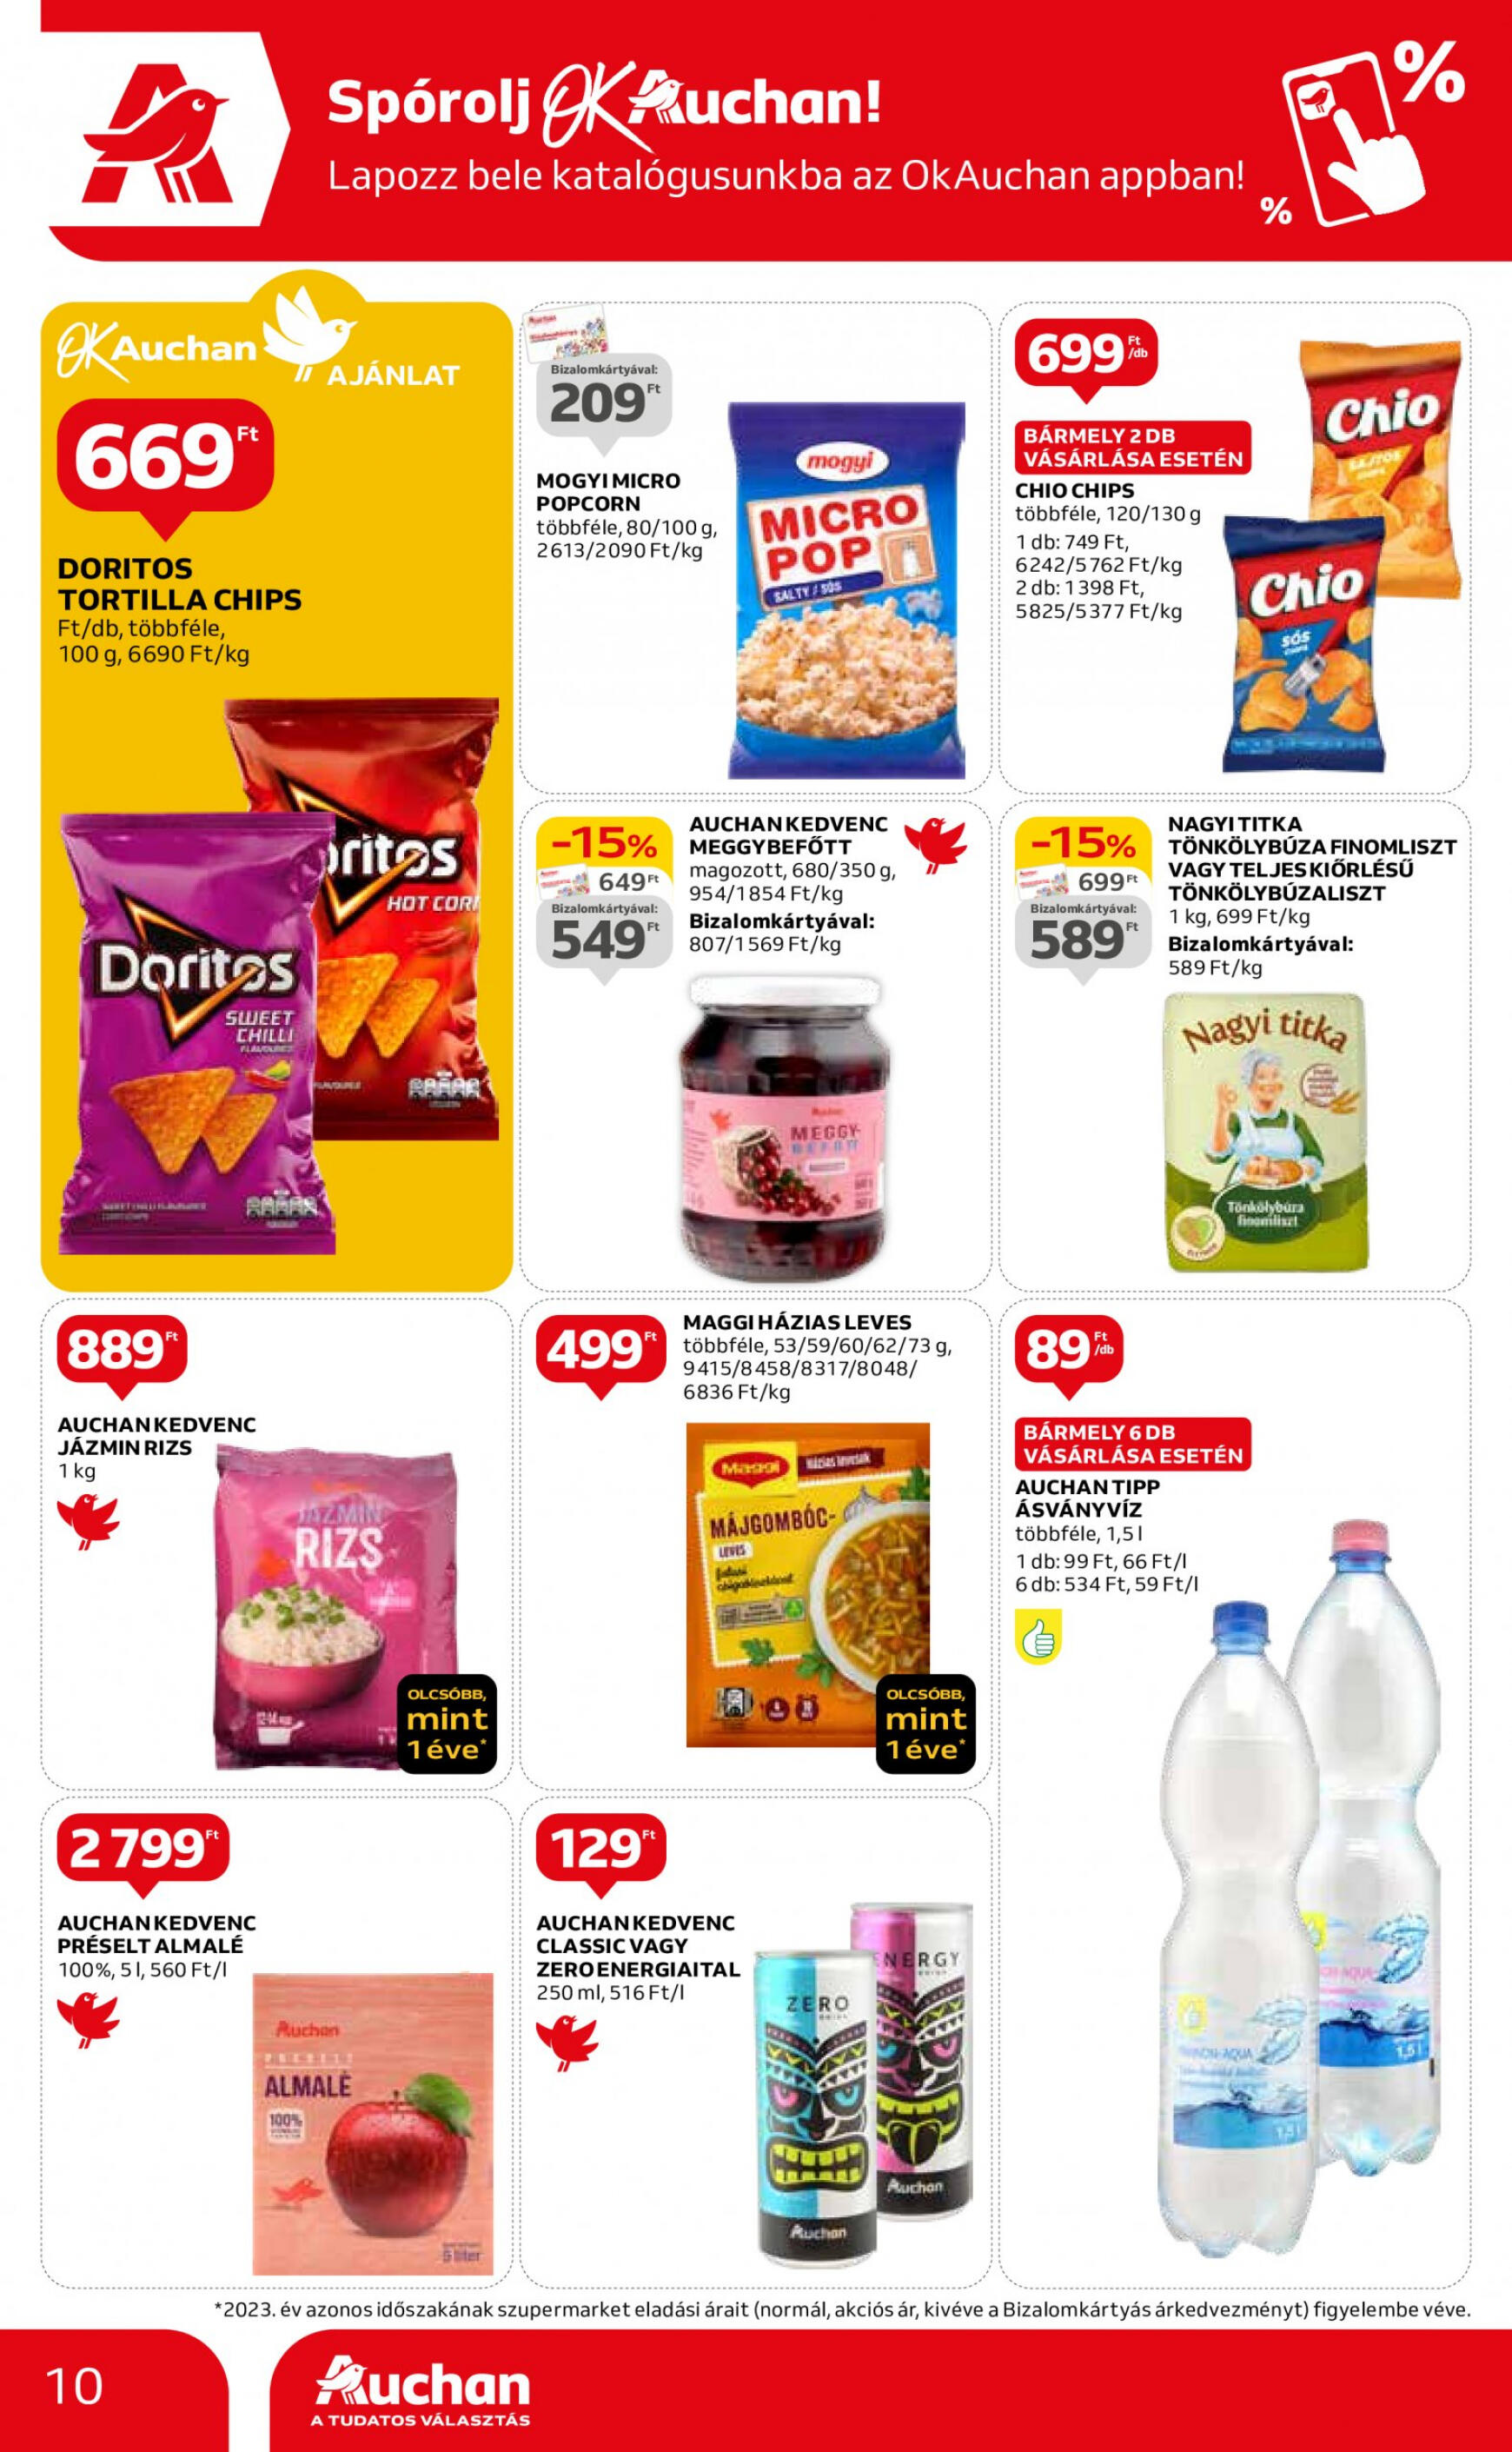 auchan - Aktuális újság Auchan szupermarket 05.16. - 05.22. - page: 10